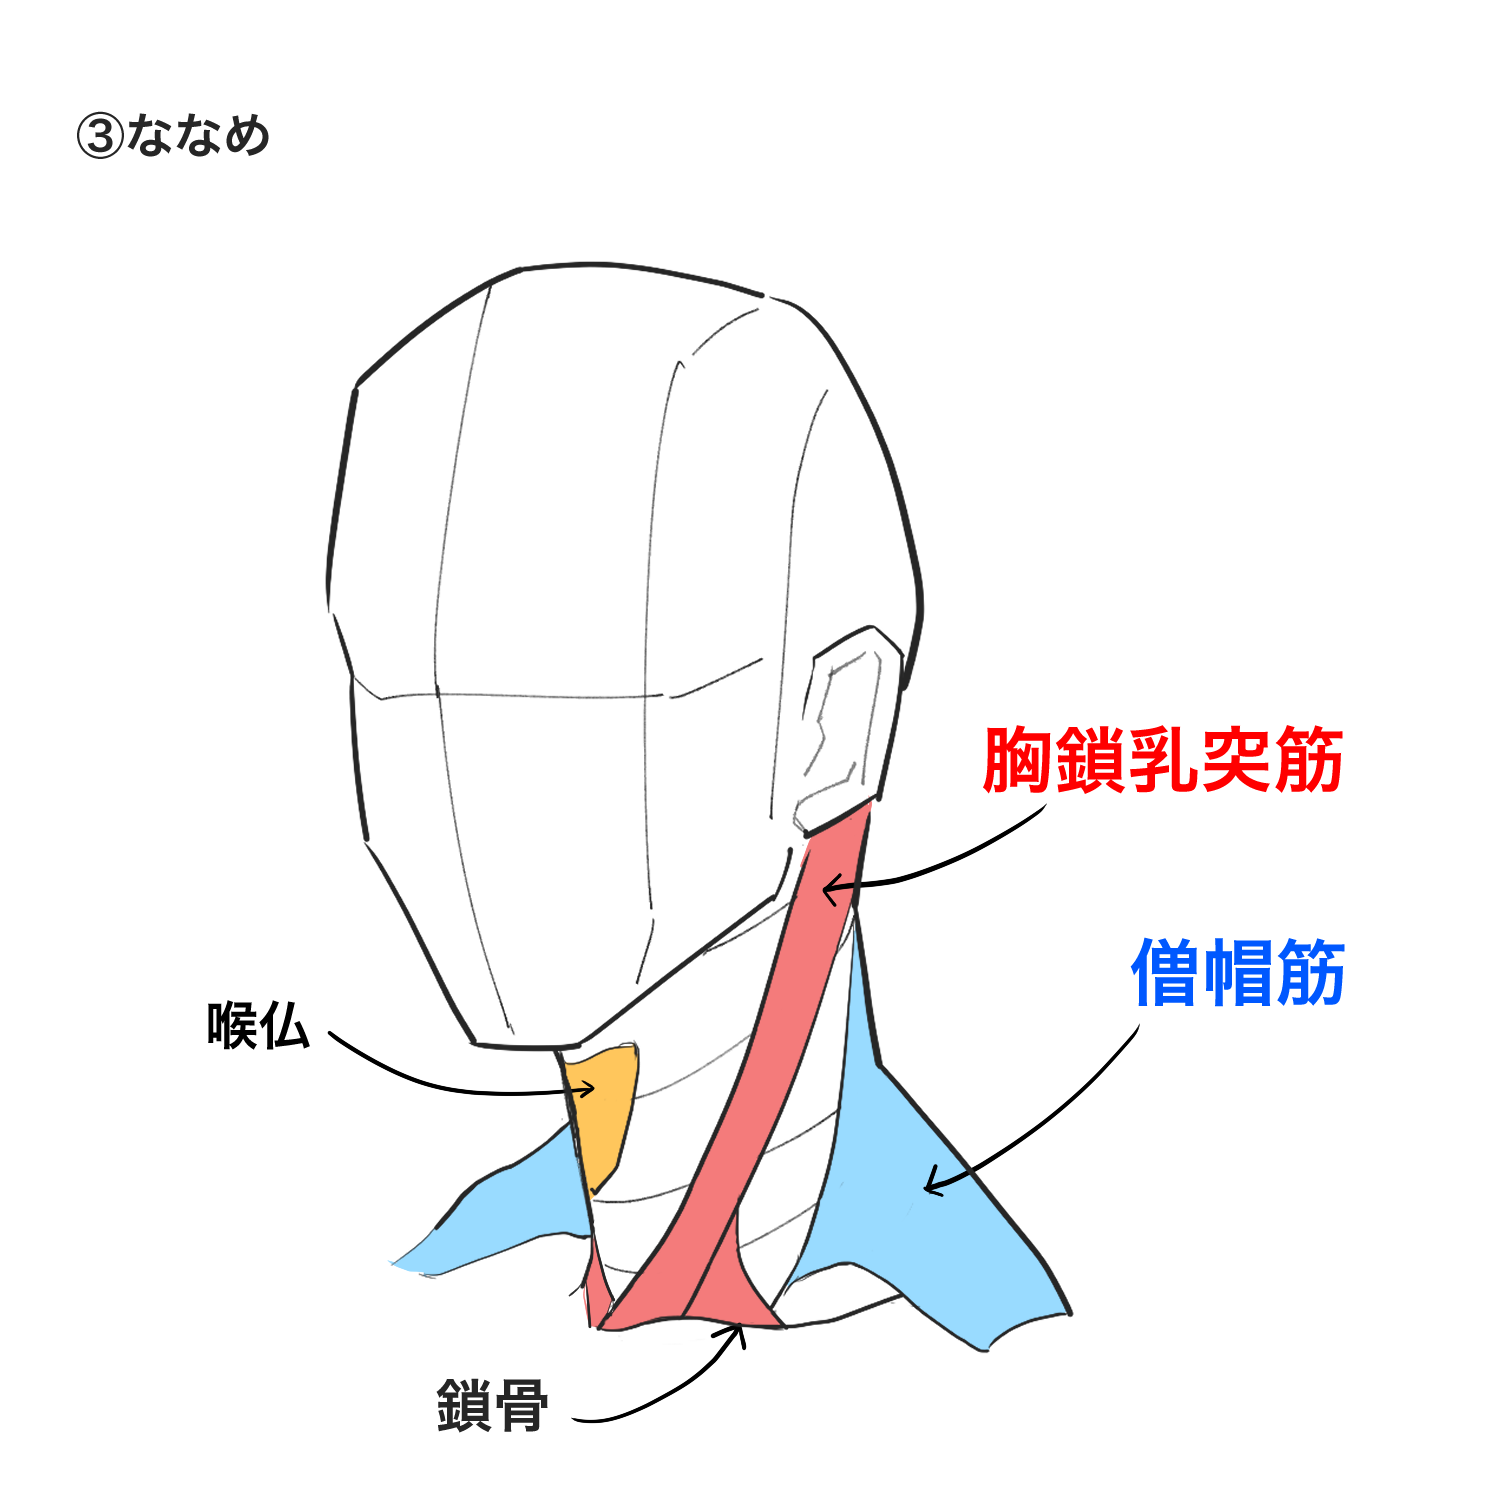 初心者向け 首の描き方を学ぼう Medibang Paint 無料のイラスト マンガ制作ツール